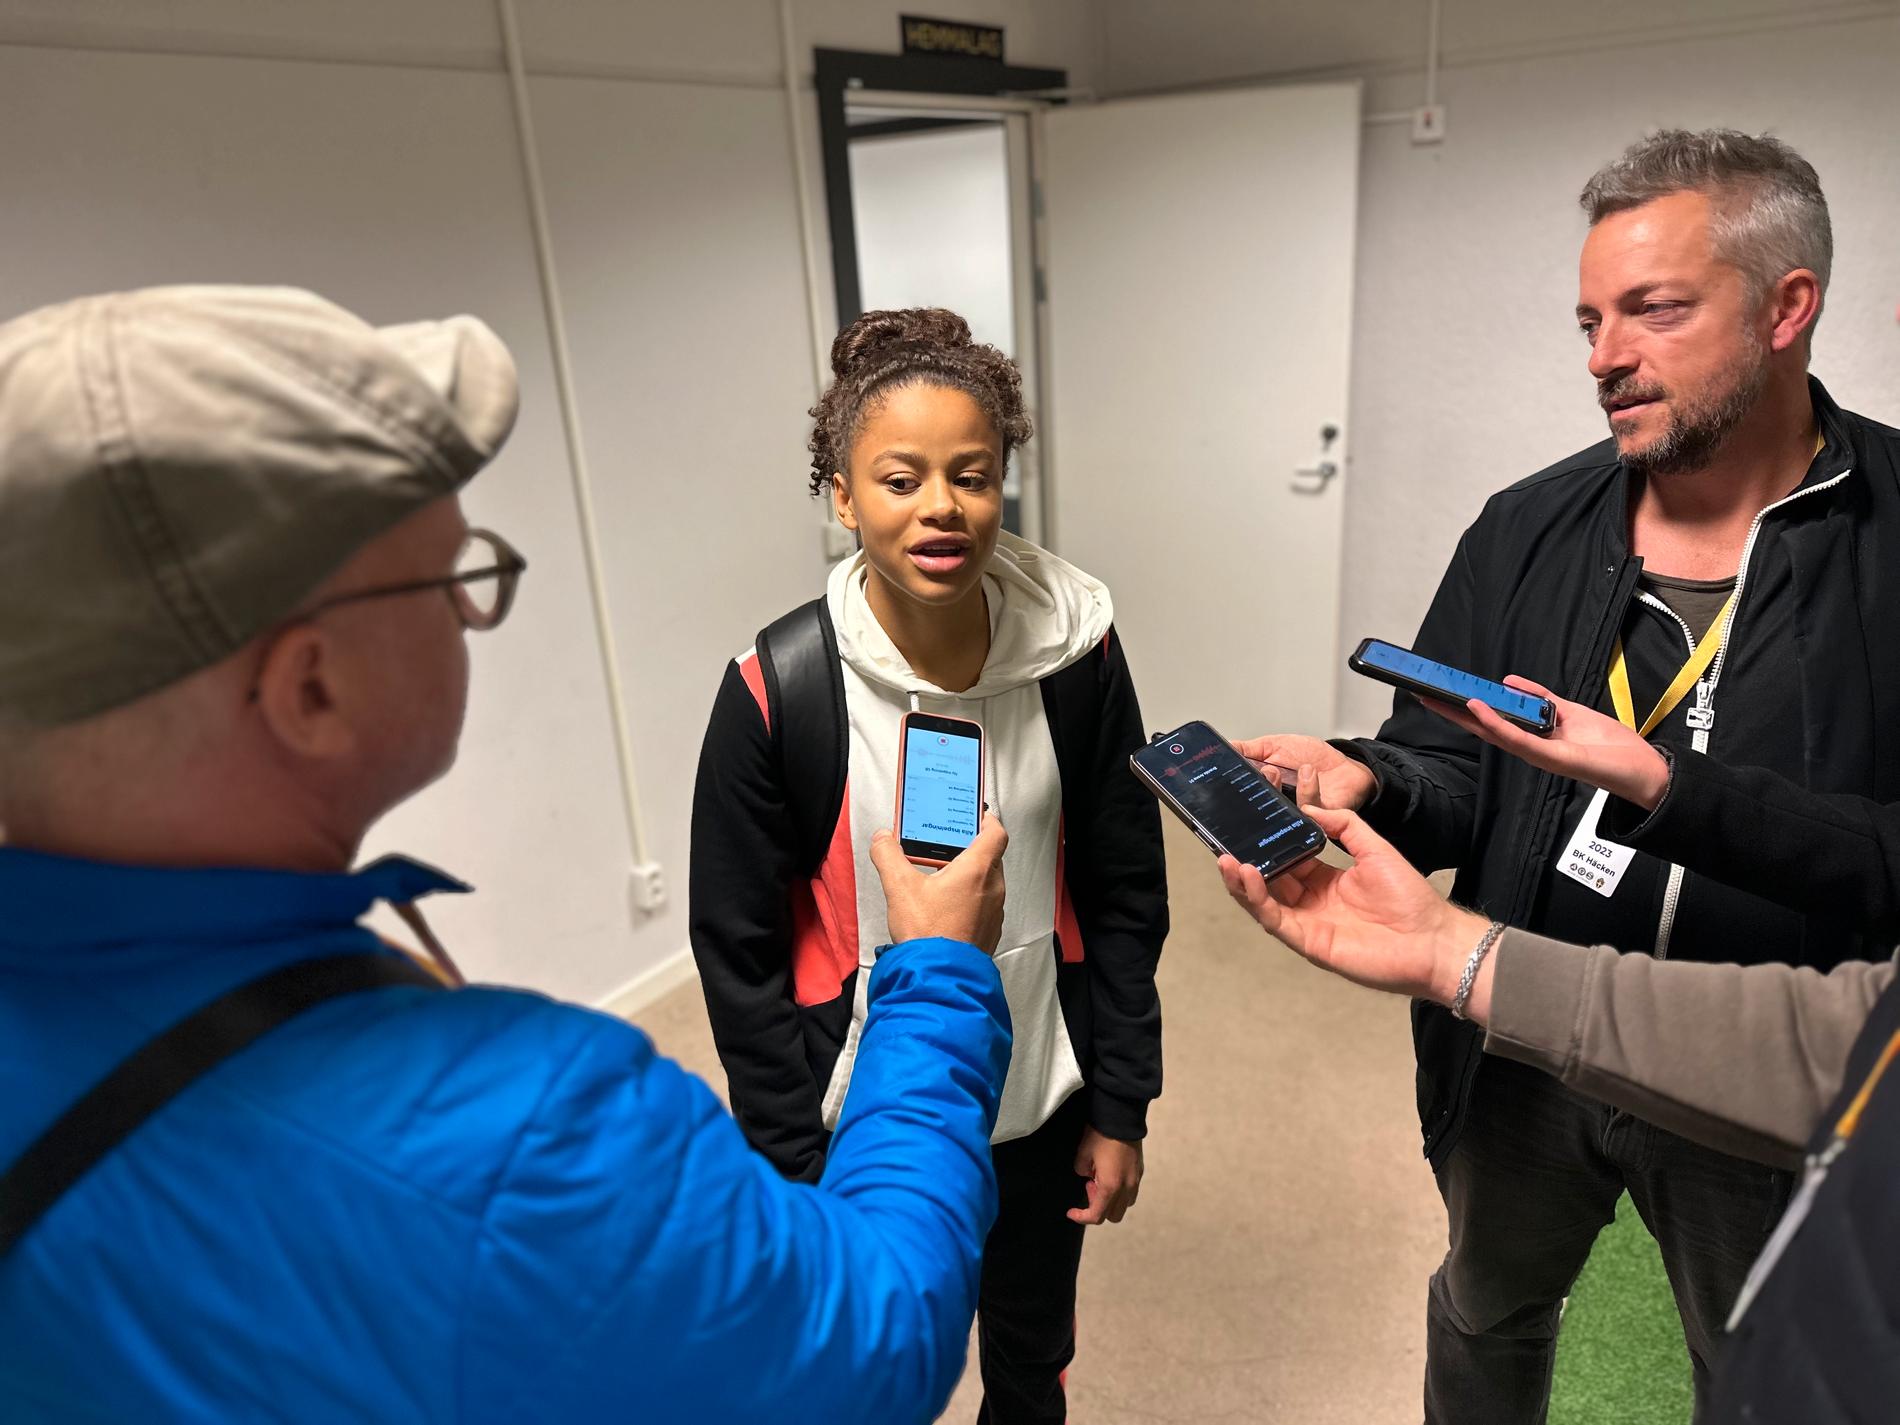 Efter matchen intervjuades Felicia Schröder, 16 år, av GT/Expressen, Göteborg-Posten, Aftonbladet, TT och Fotbollskanalen. 